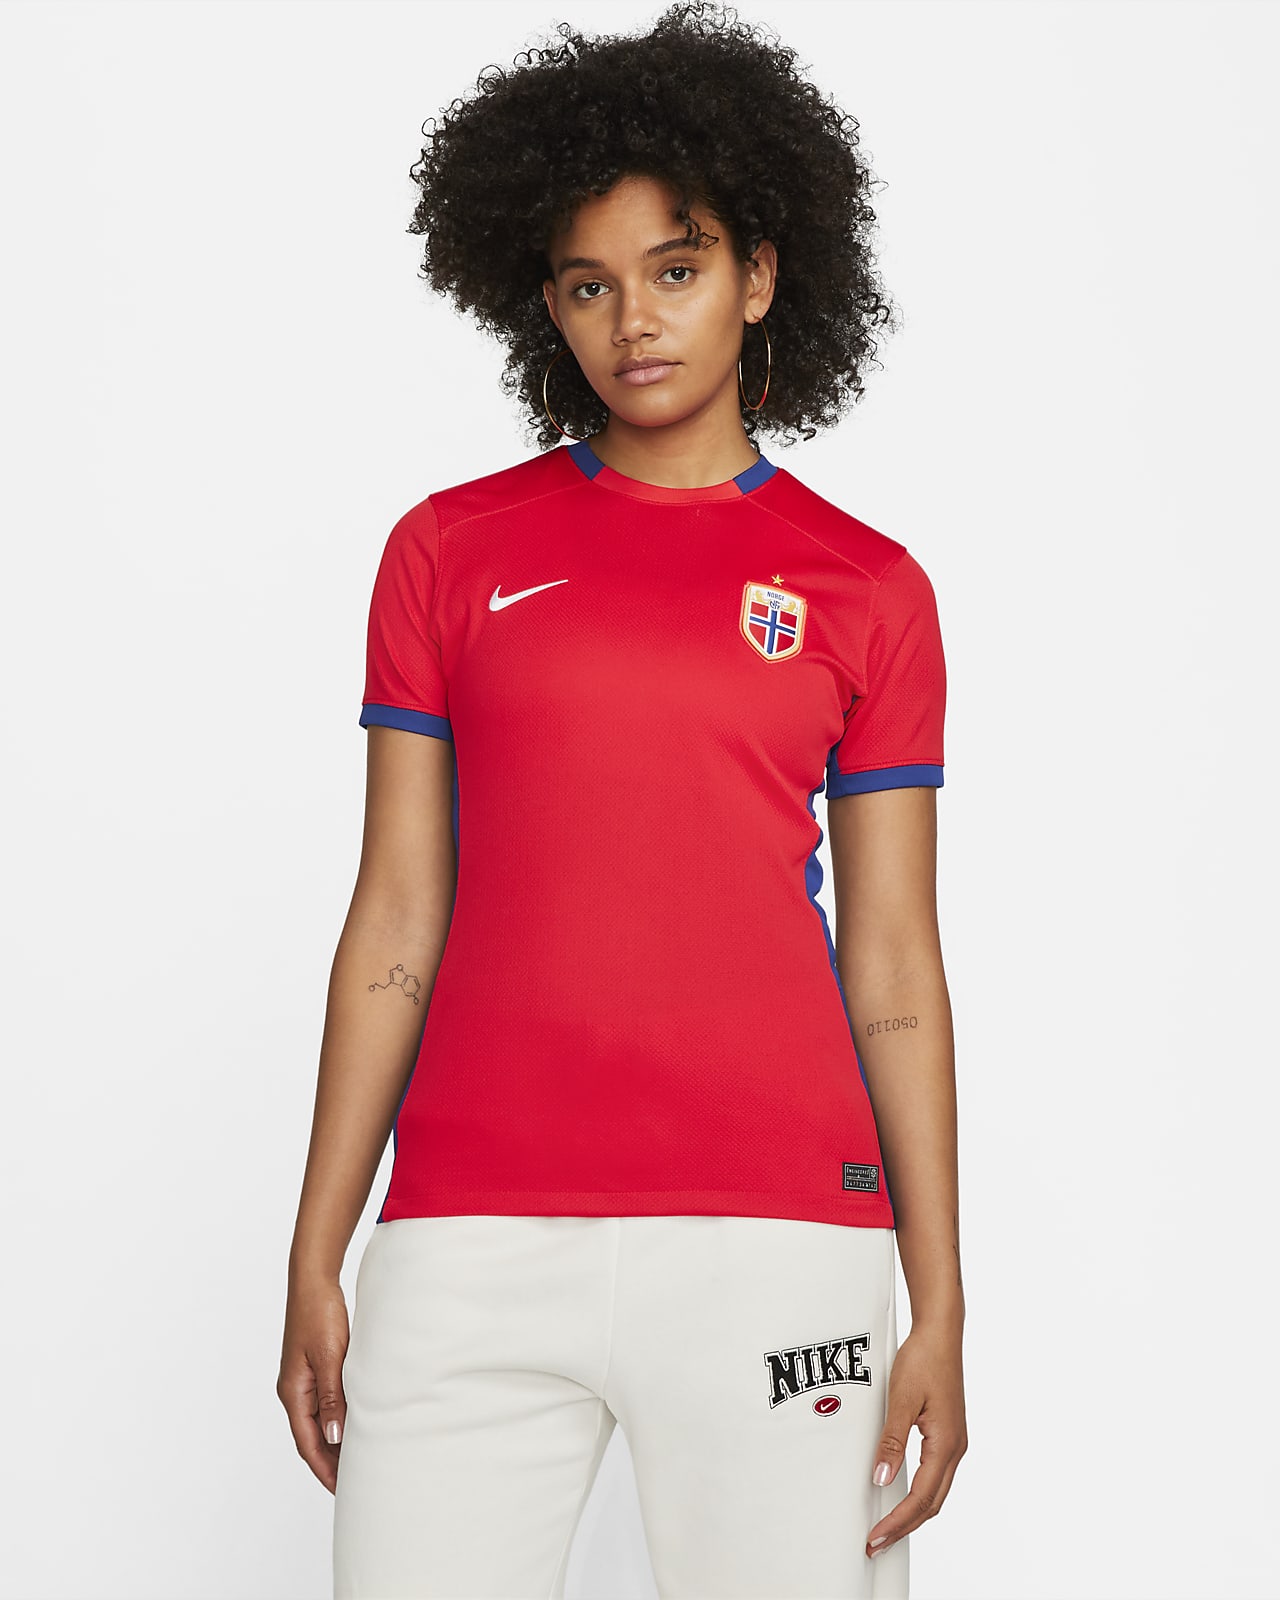 Nike Women's National Team Home Kit - Canada Soccer